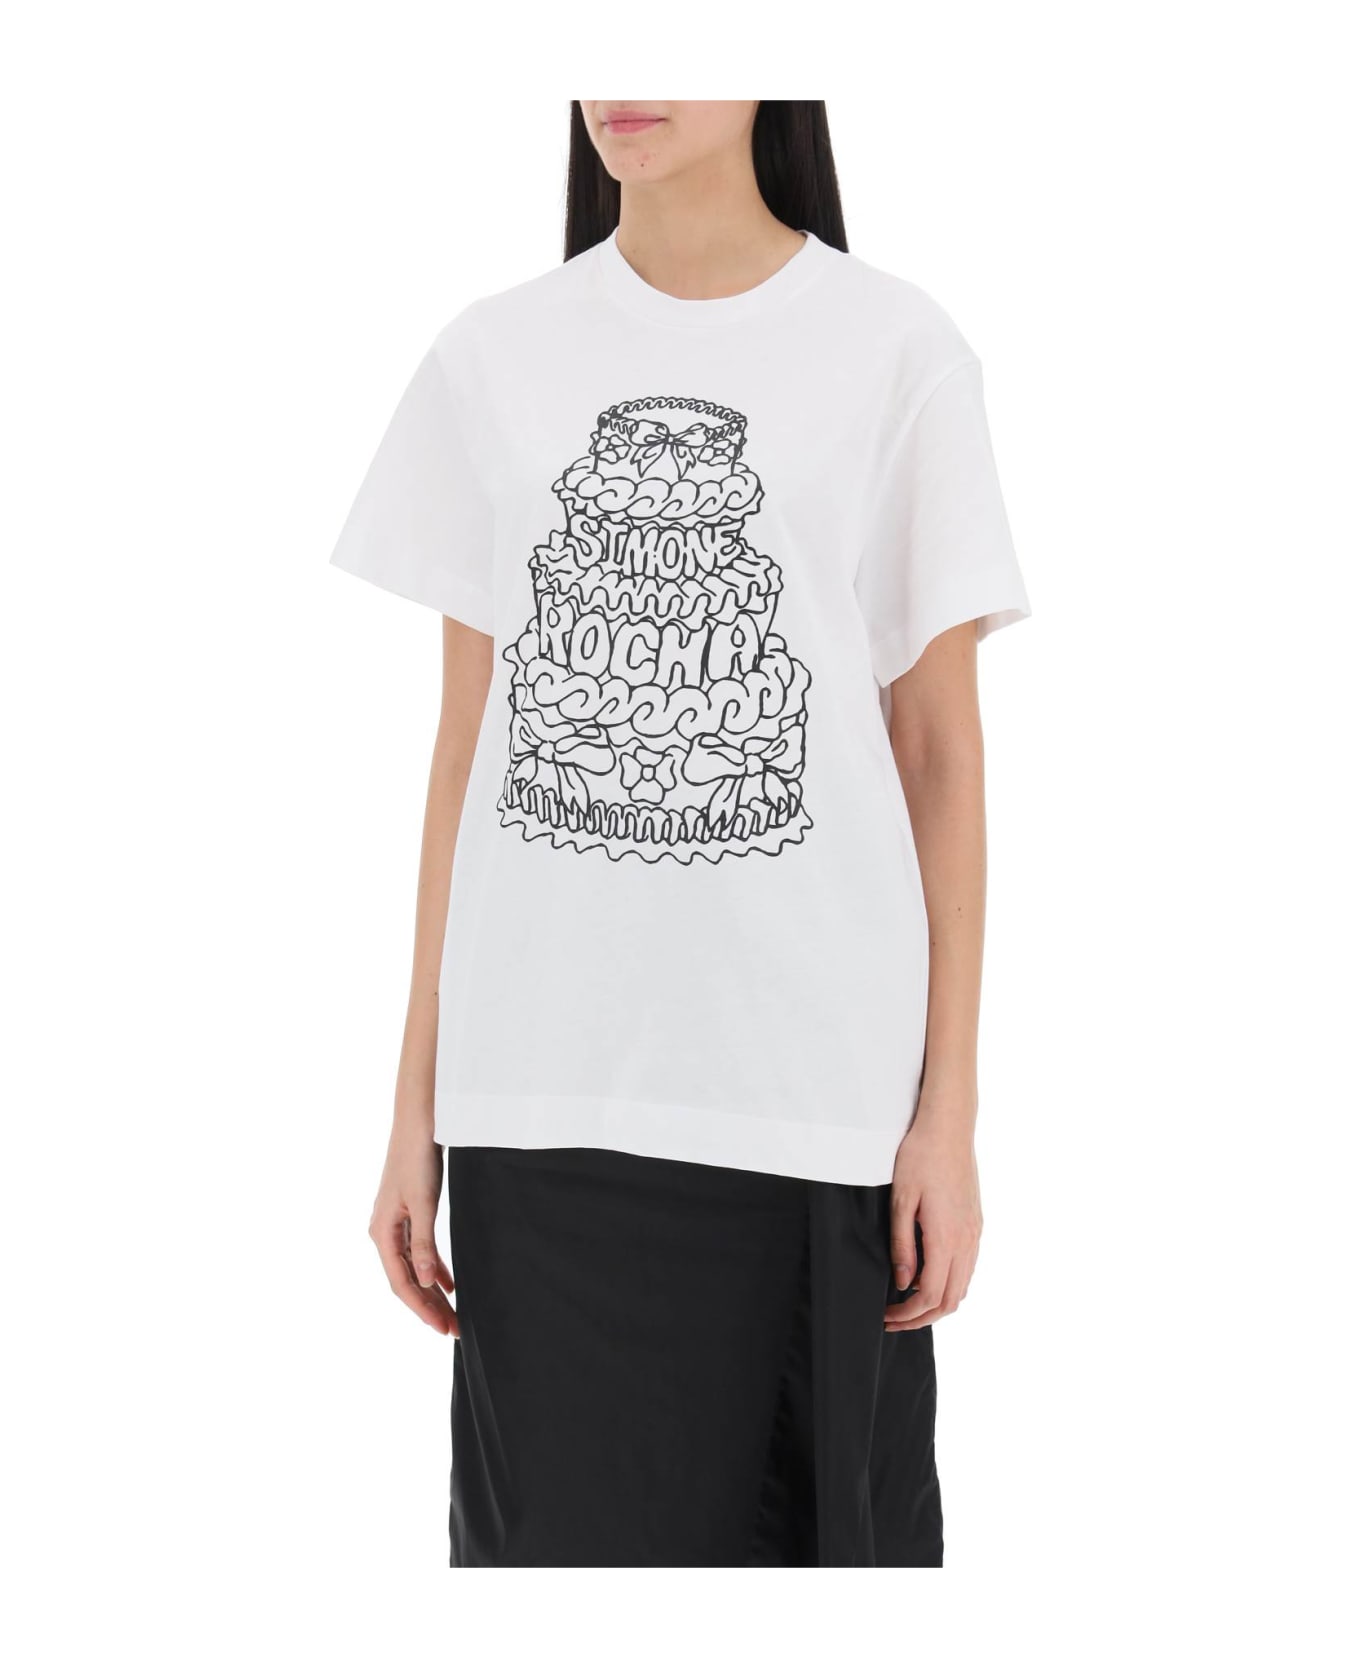 Simone Rocha Cake Crewneck T-shirt - WHITE BLACK (White) Tシャツ